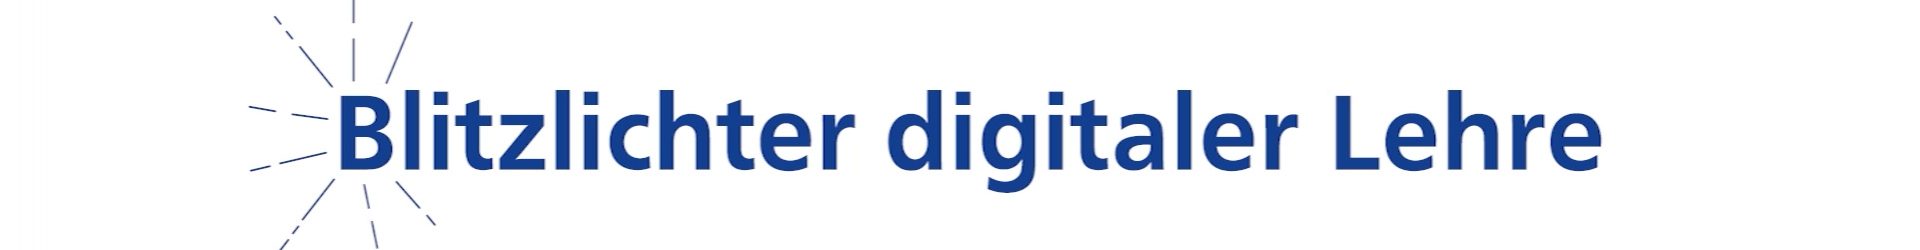 Beitragsreihe “Blitzlichter digitaler Lehre” geben Einblicke in die digitale Lehre während des Sommersemesters 2020